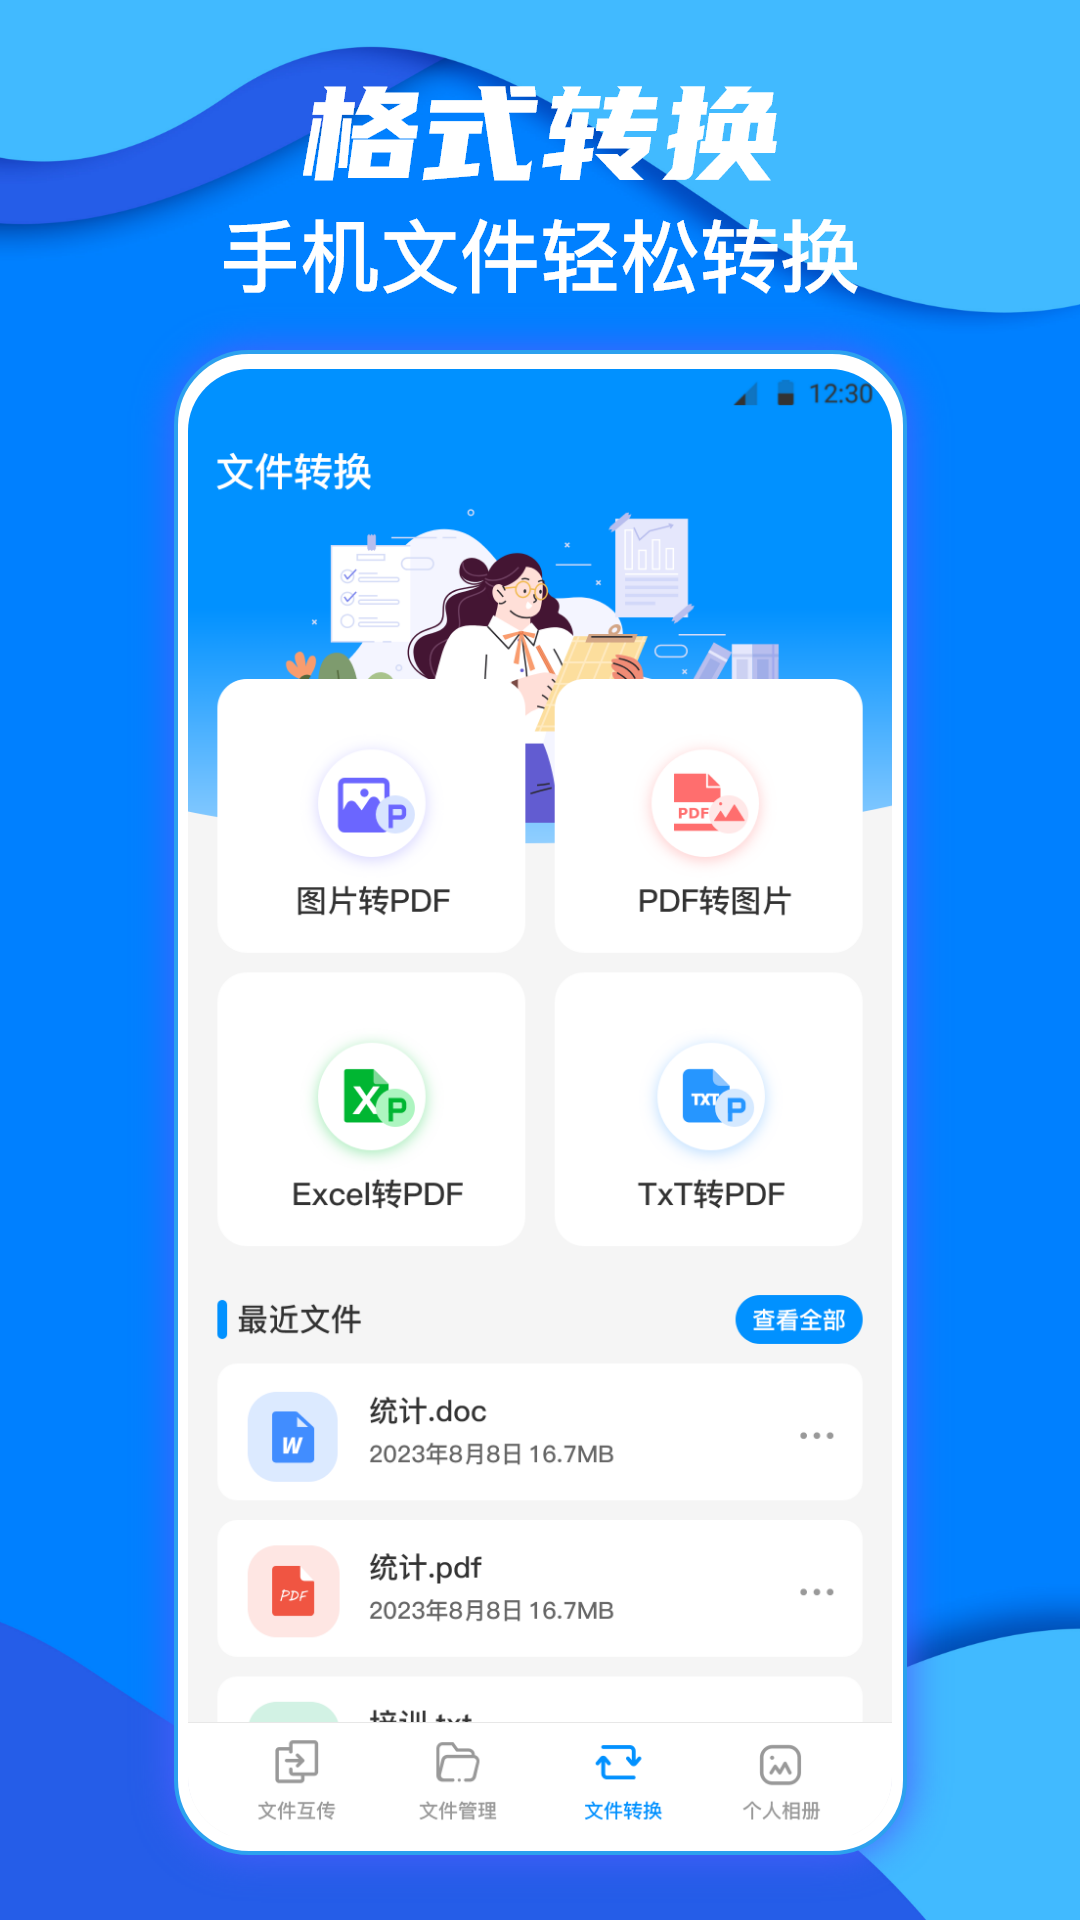 鹏成换机助手app下载,鹏成换机助手app安卓版 v3.3.0904